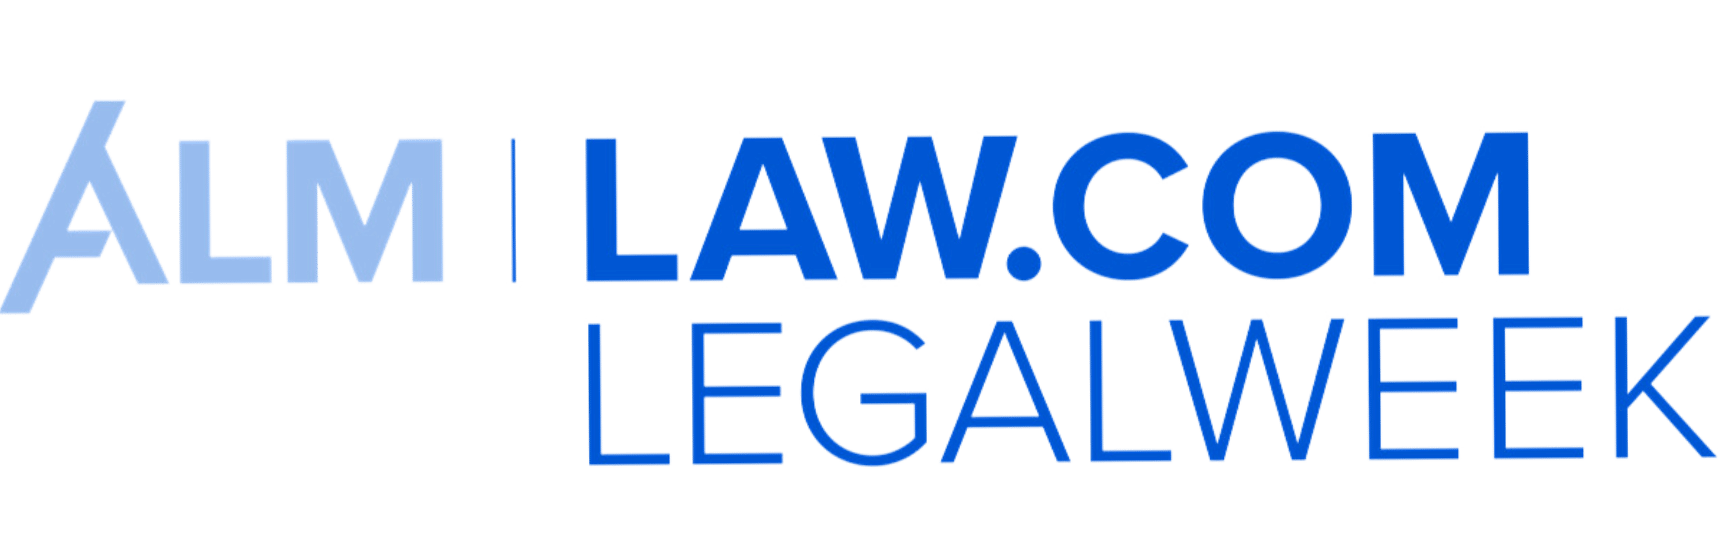 Legalweek logo